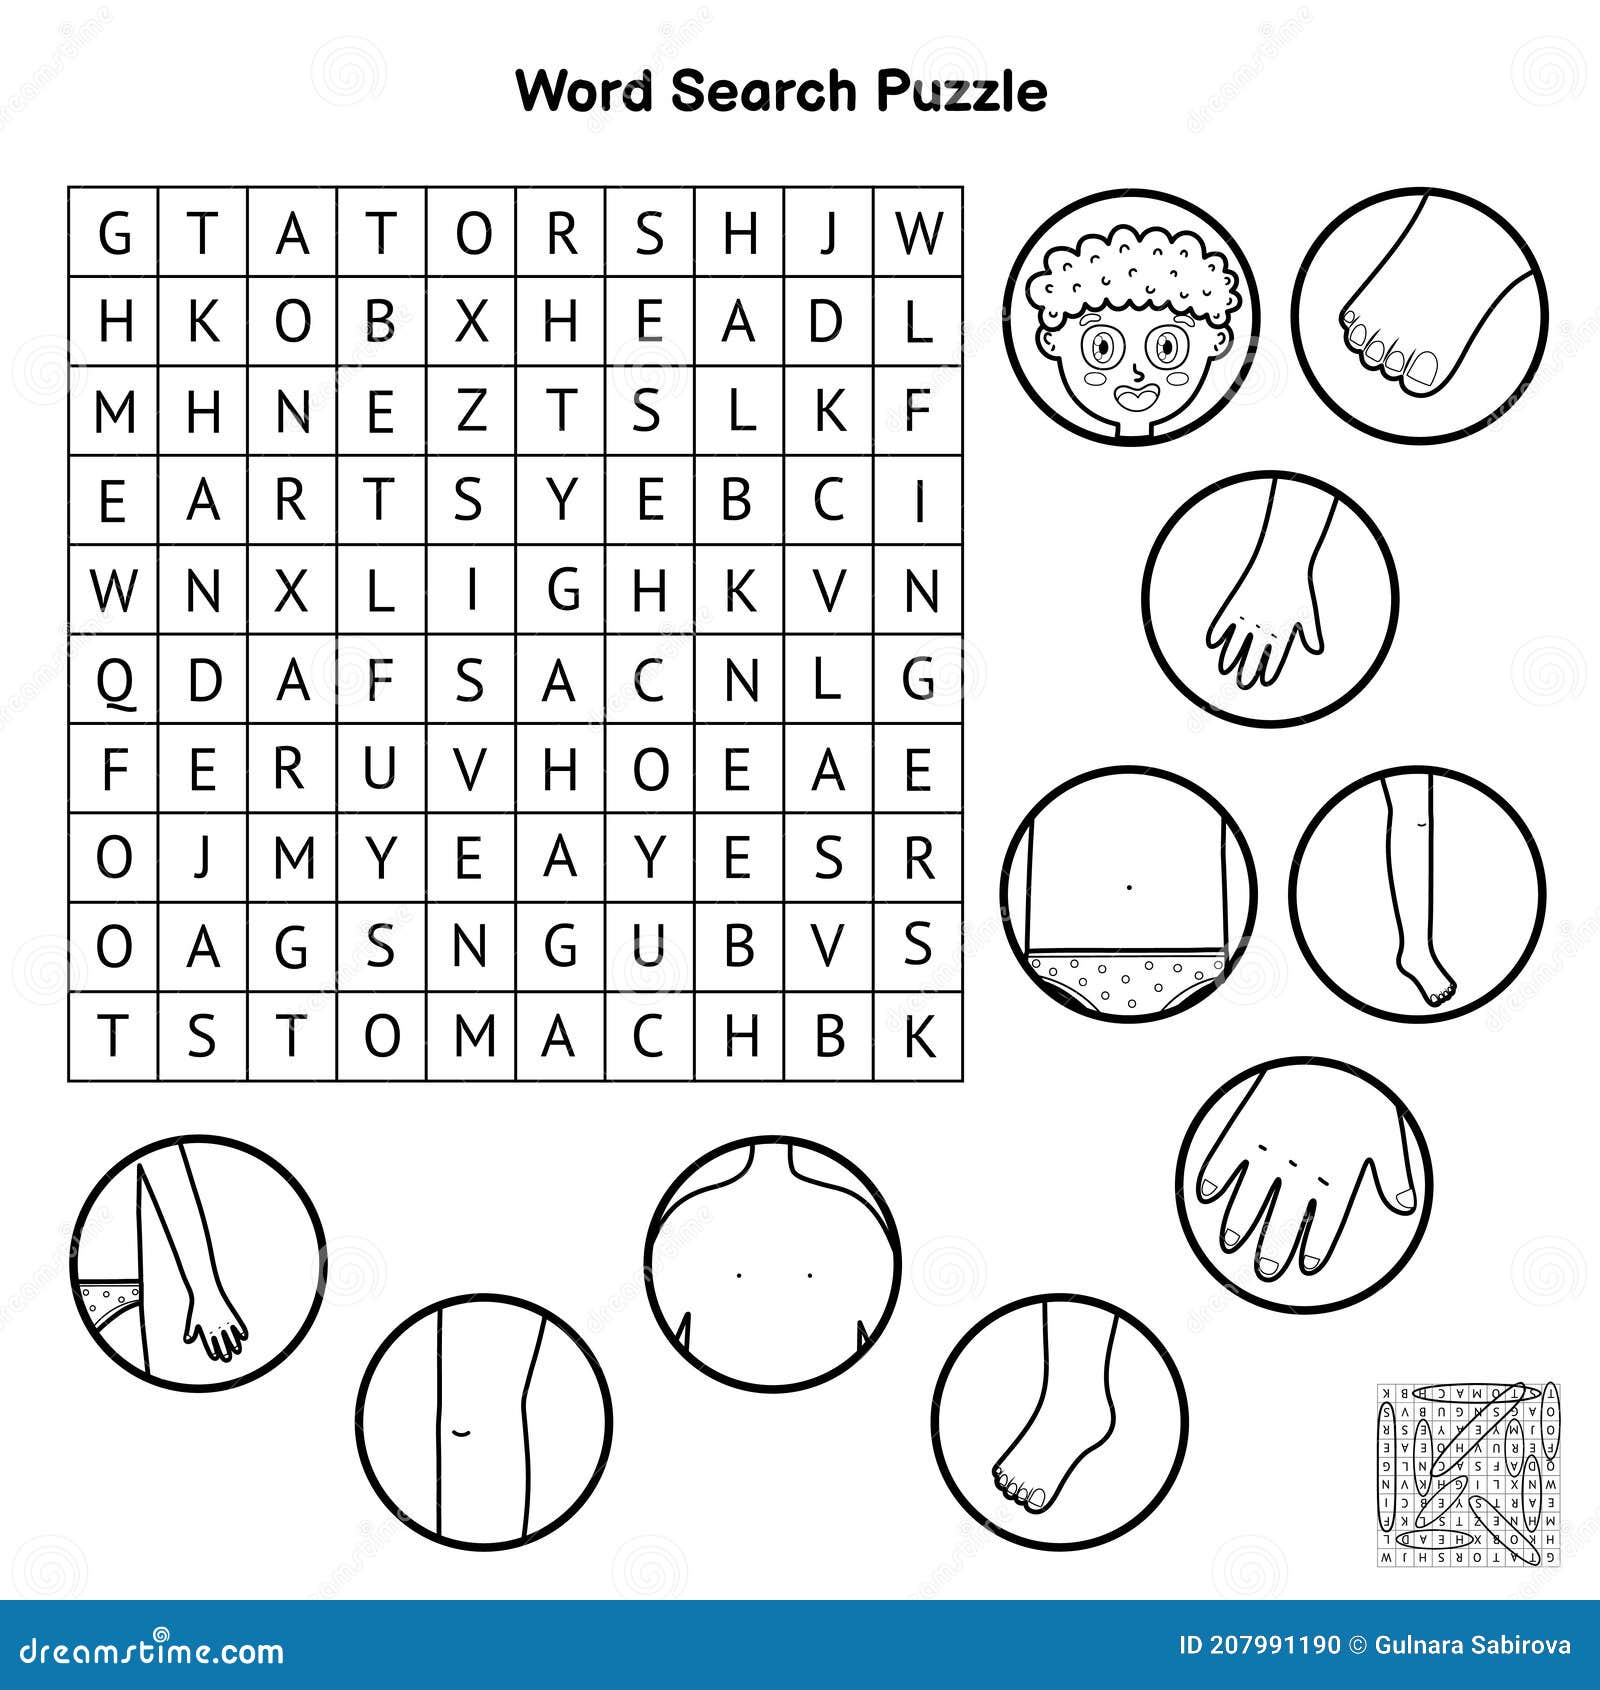 Detalhes brancos do quebra-cabeça com o texto educação online